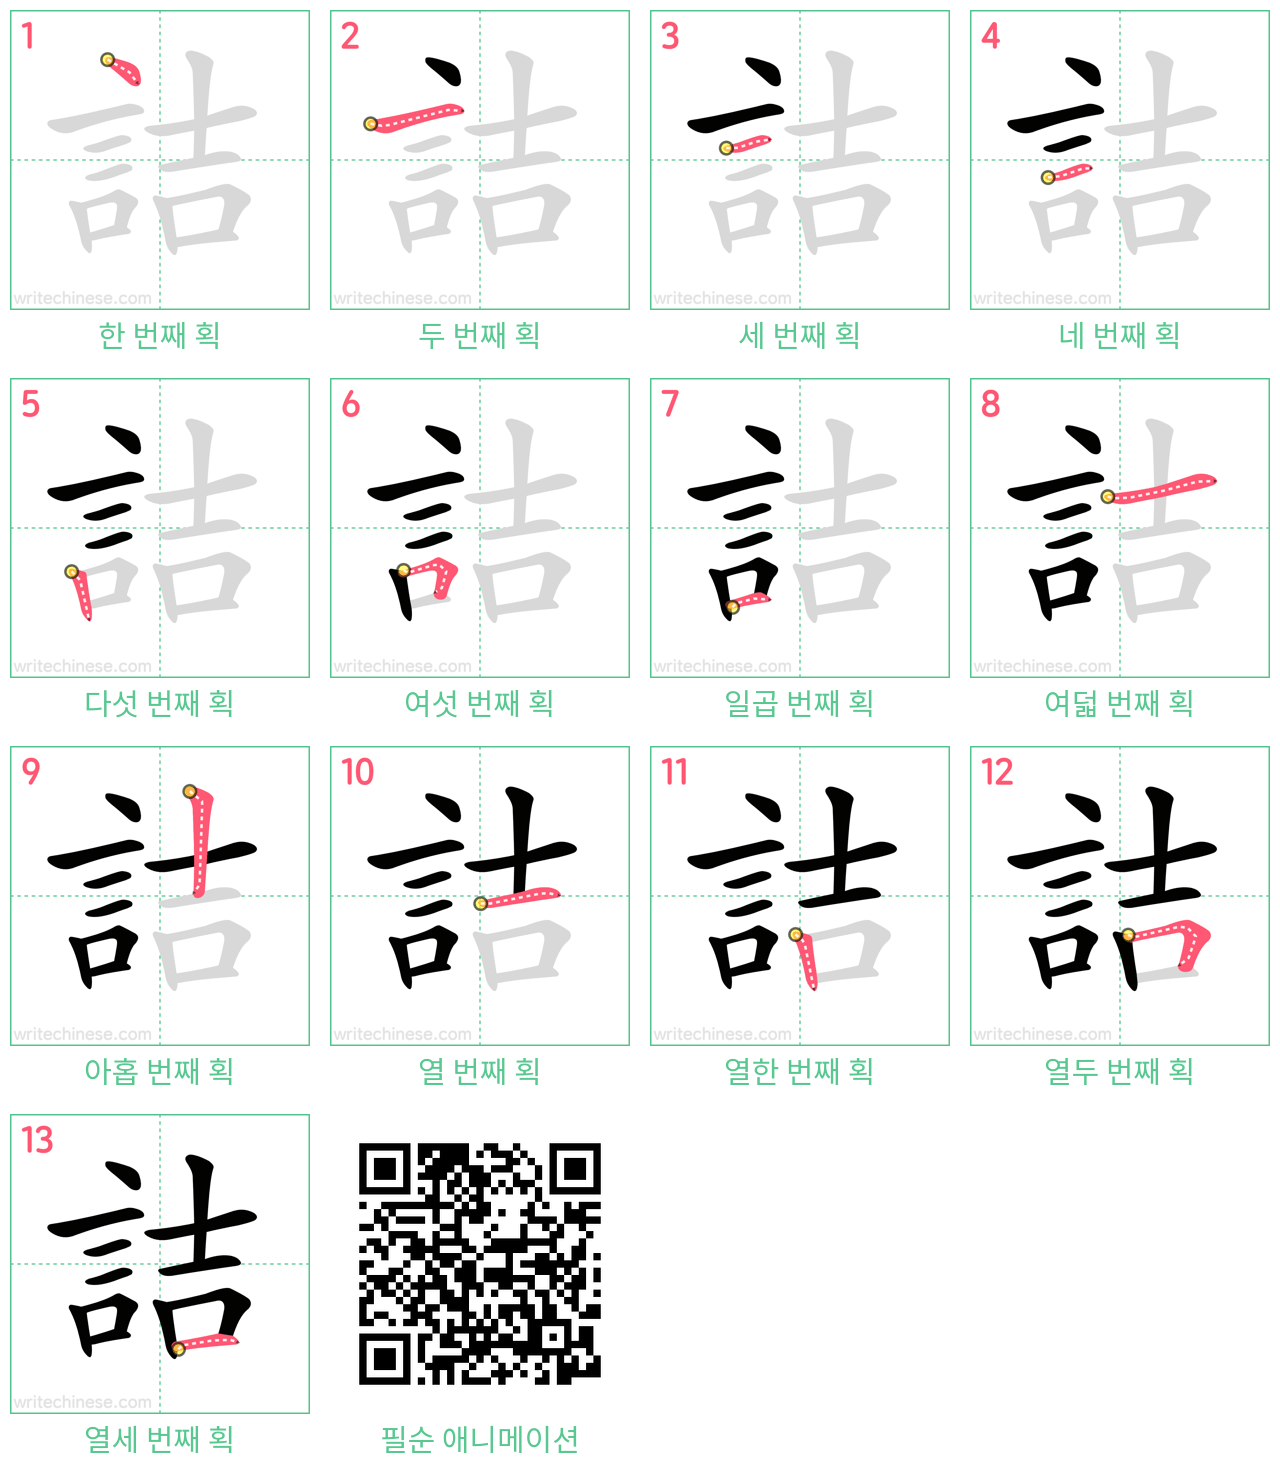 詰 step-by-step stroke order diagrams